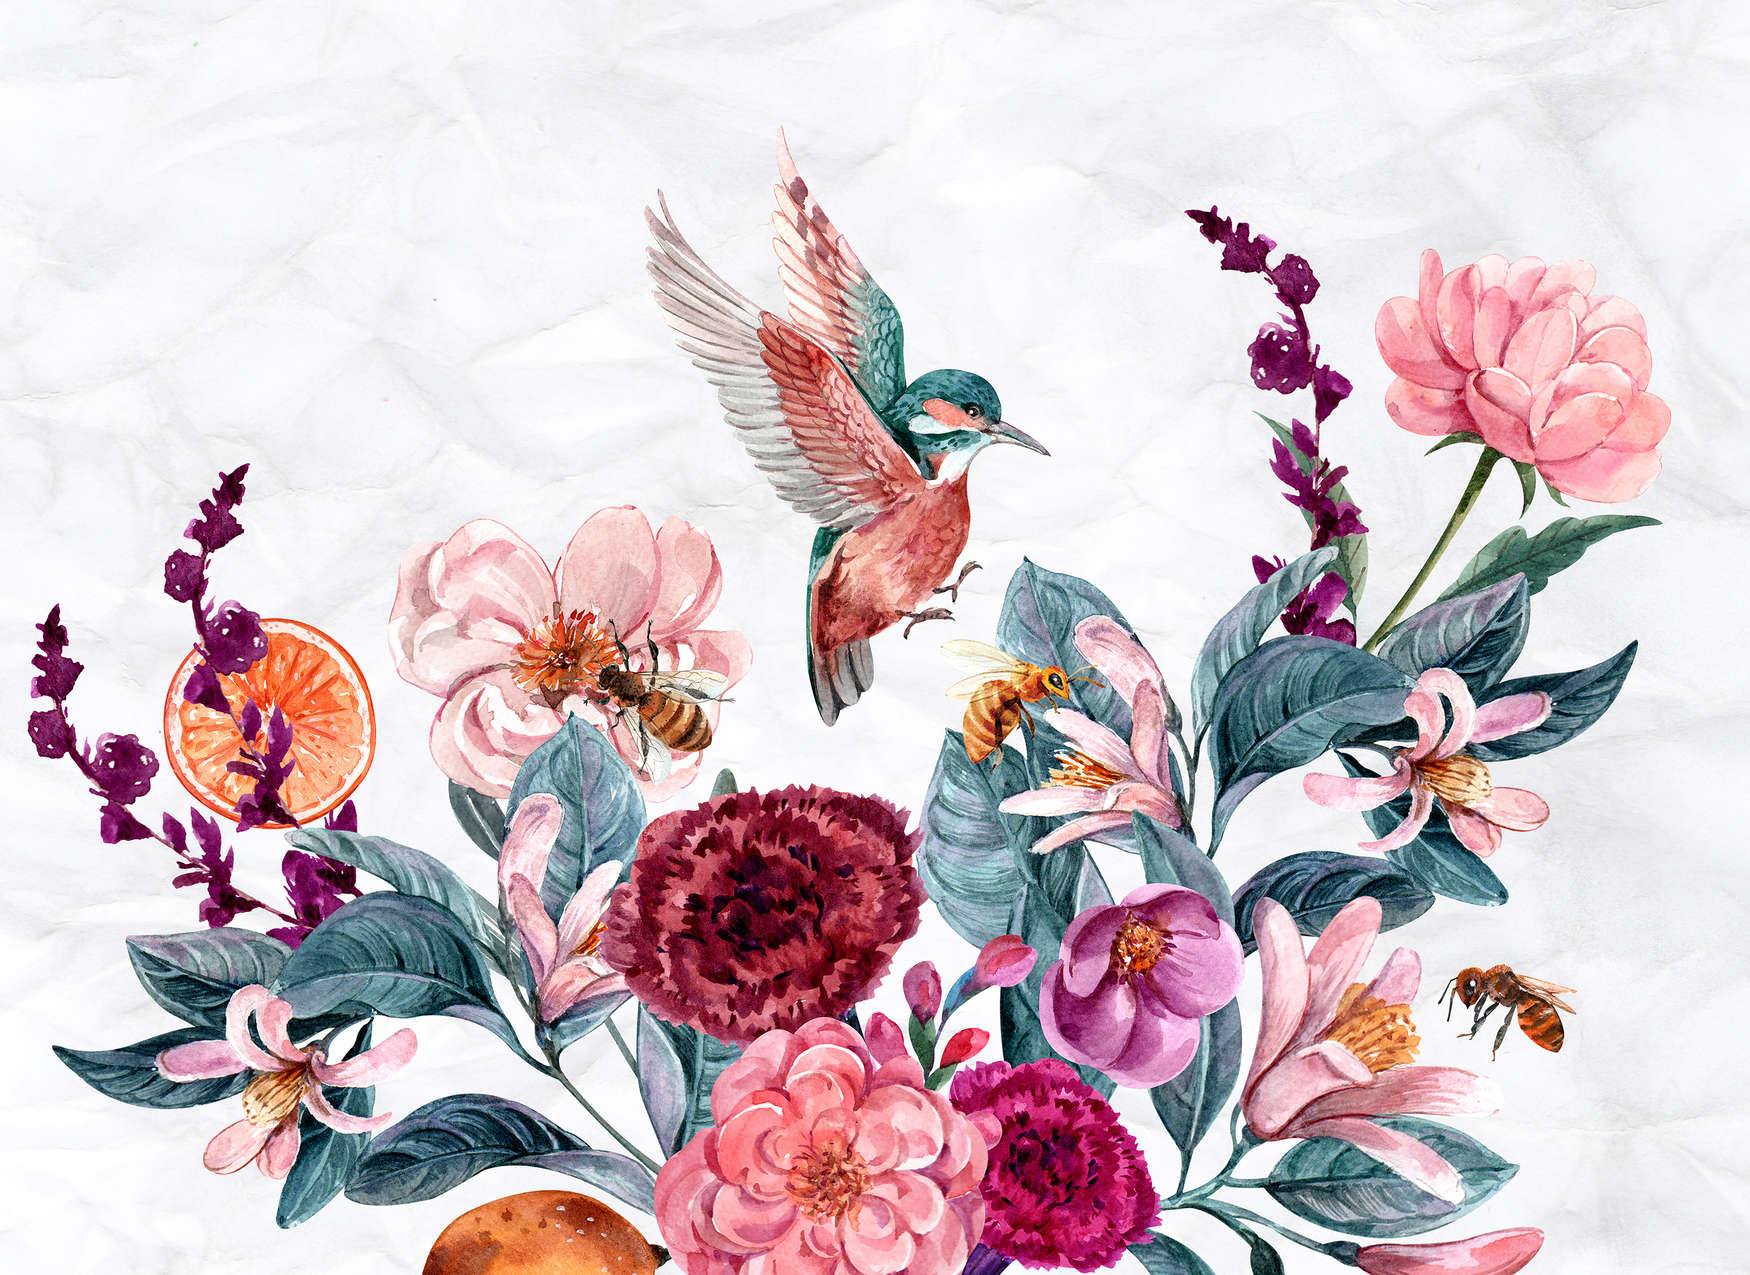             Carta da parati con fiori e uccelli su sfondo 3D - Rosa, verde, bianco
        